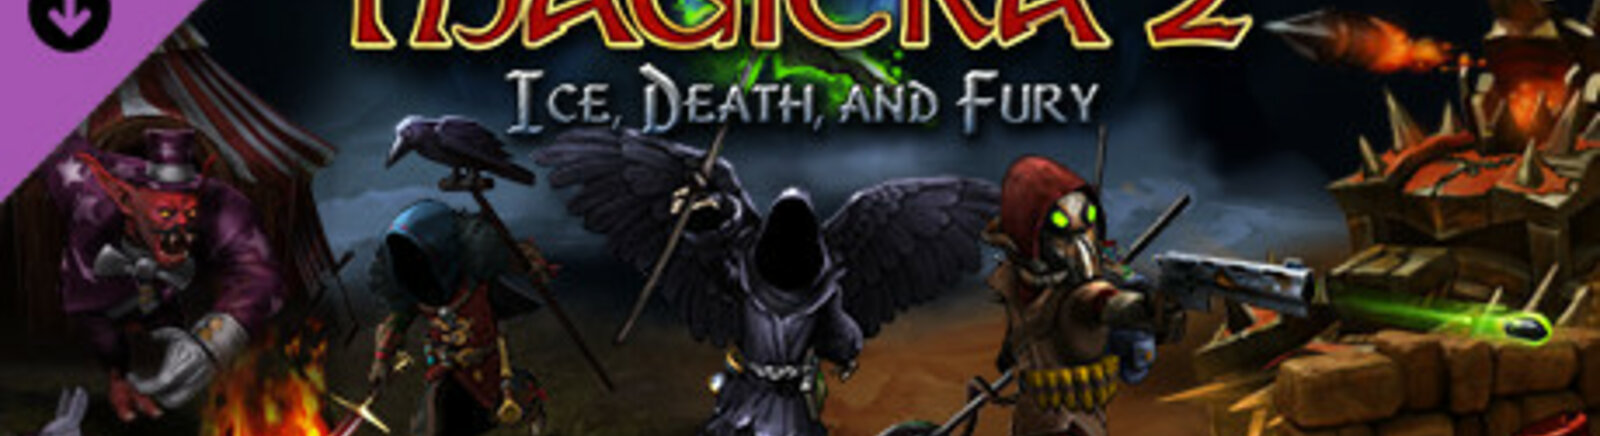 Дата выхода Magicka 2: Ice, Death and Fury  на PC, Mac и Linux в России и во всем мире